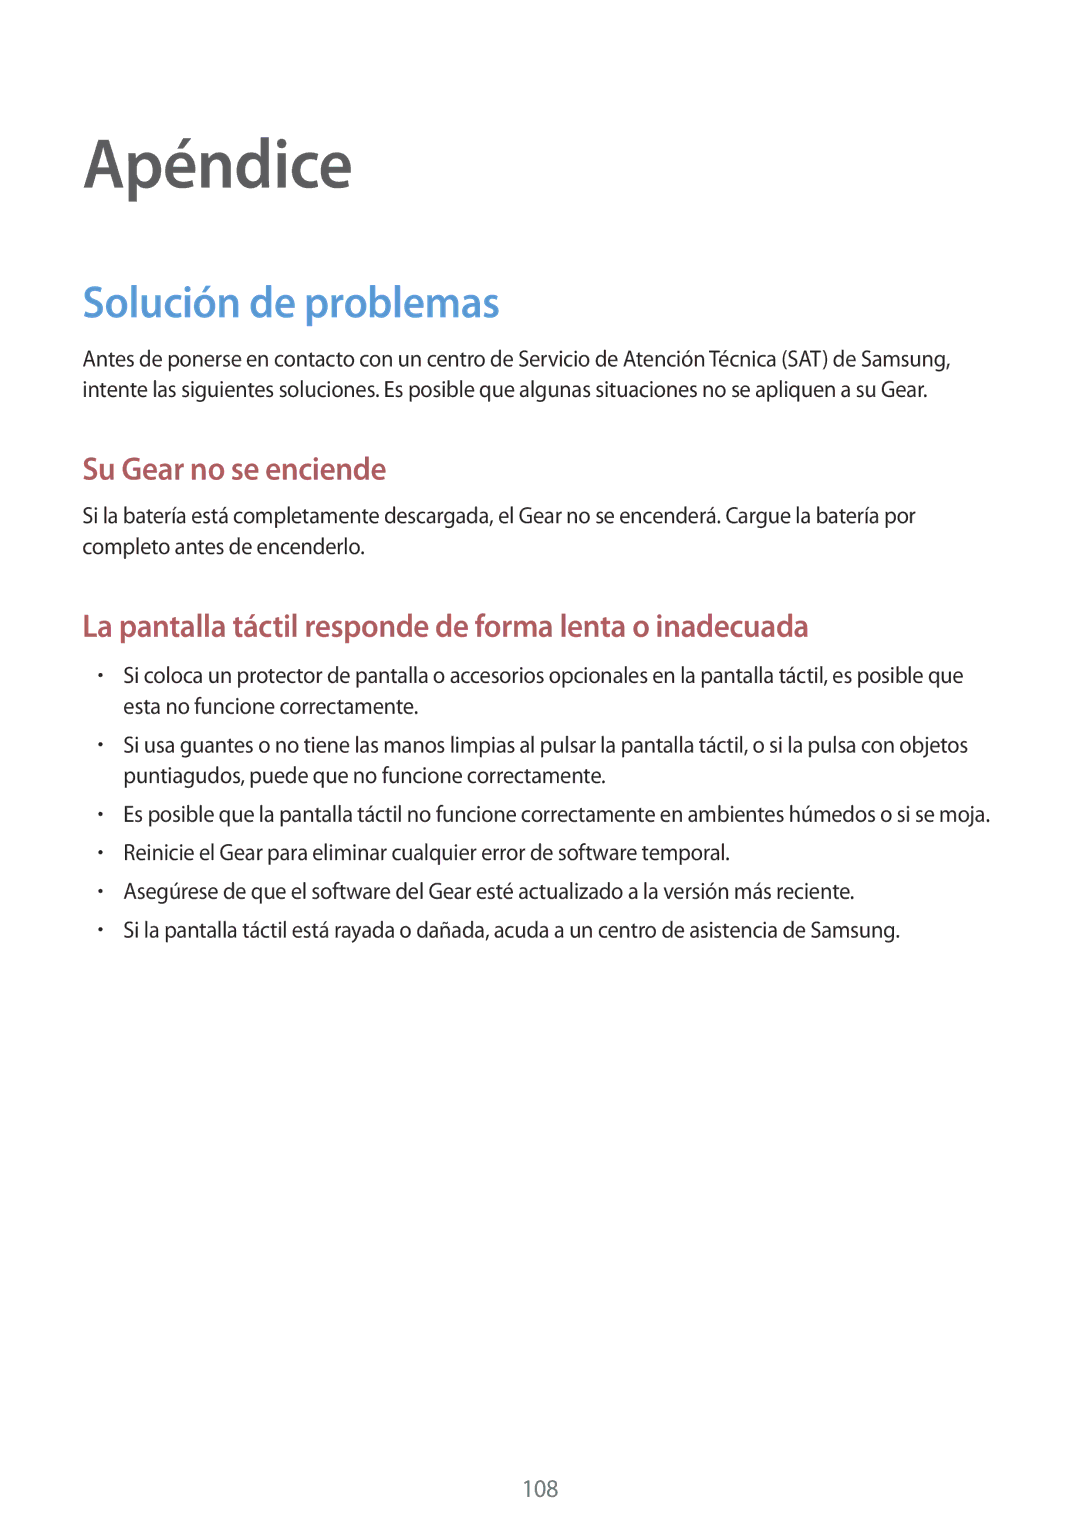 Samsung SM-R600NZBAPHE, SM-R600NZKAPHE manual Apéndice, Solución de problemas 